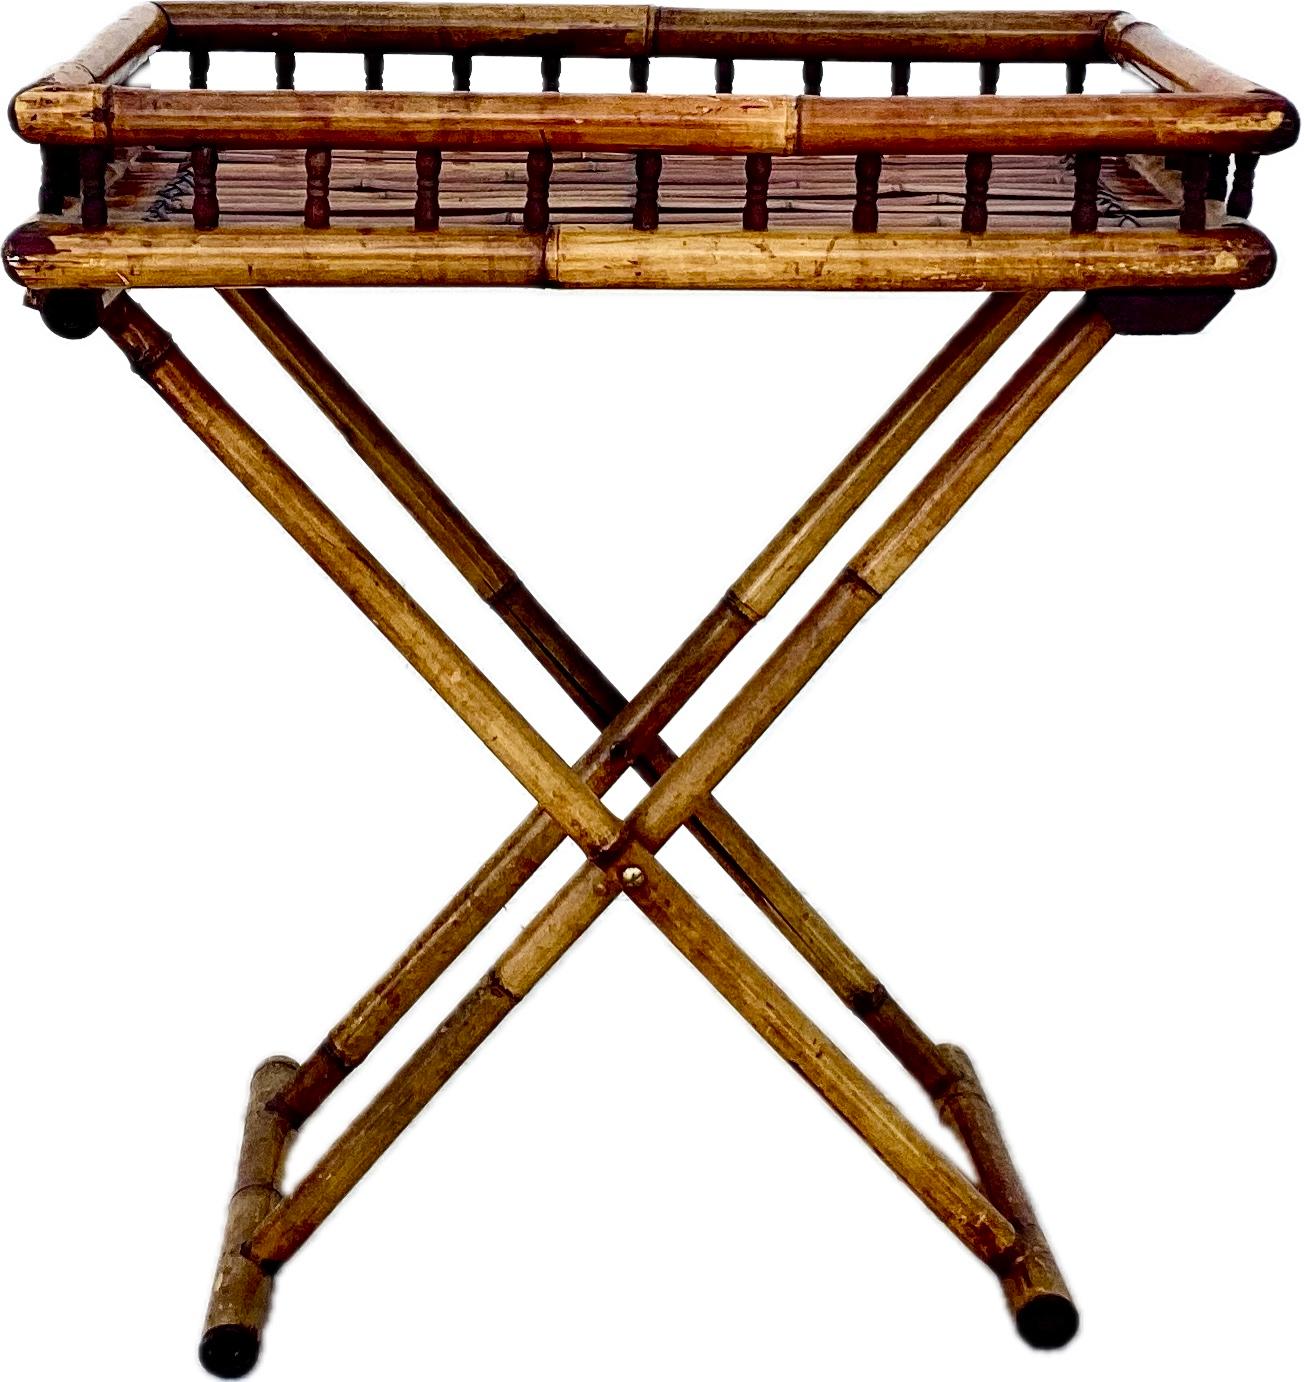 Klappbarer Bambus-Tisch aus der Mitte des Jahrhunderts. Der Tisch ist vielseitig einsetzbar, da er als Akzenttisch, Minibar oder Beistelltisch verwendet werden kann und zu den meisten Einrichtungsstilen passt. Lässt sich zur Aufbewahrung leicht